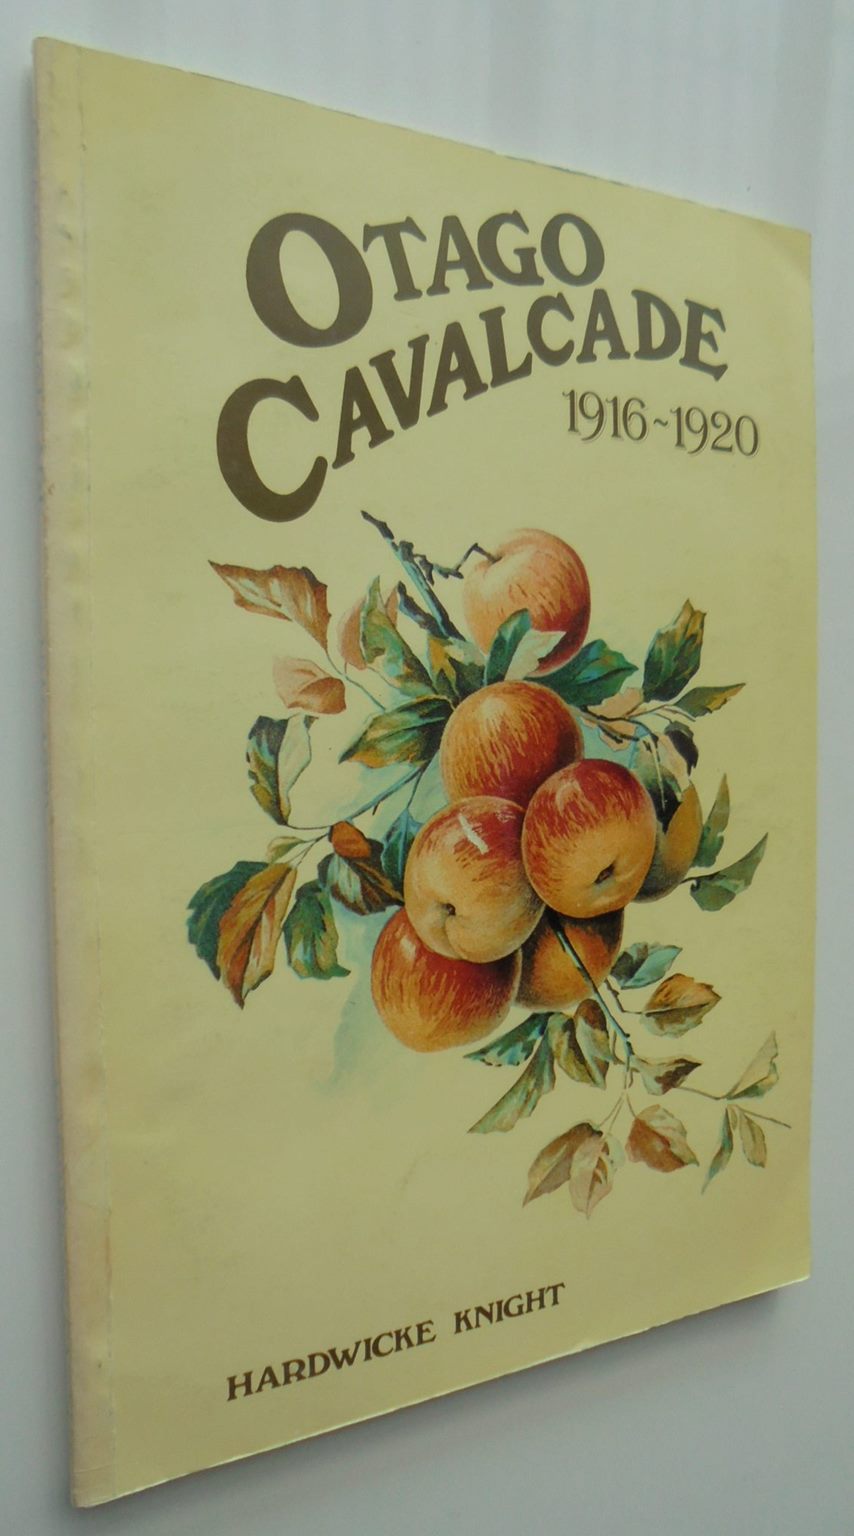 Otago Cavalcade 1926-1930, Otago Cavalcade 1916-1920 by Hardwicke Knight 2 books